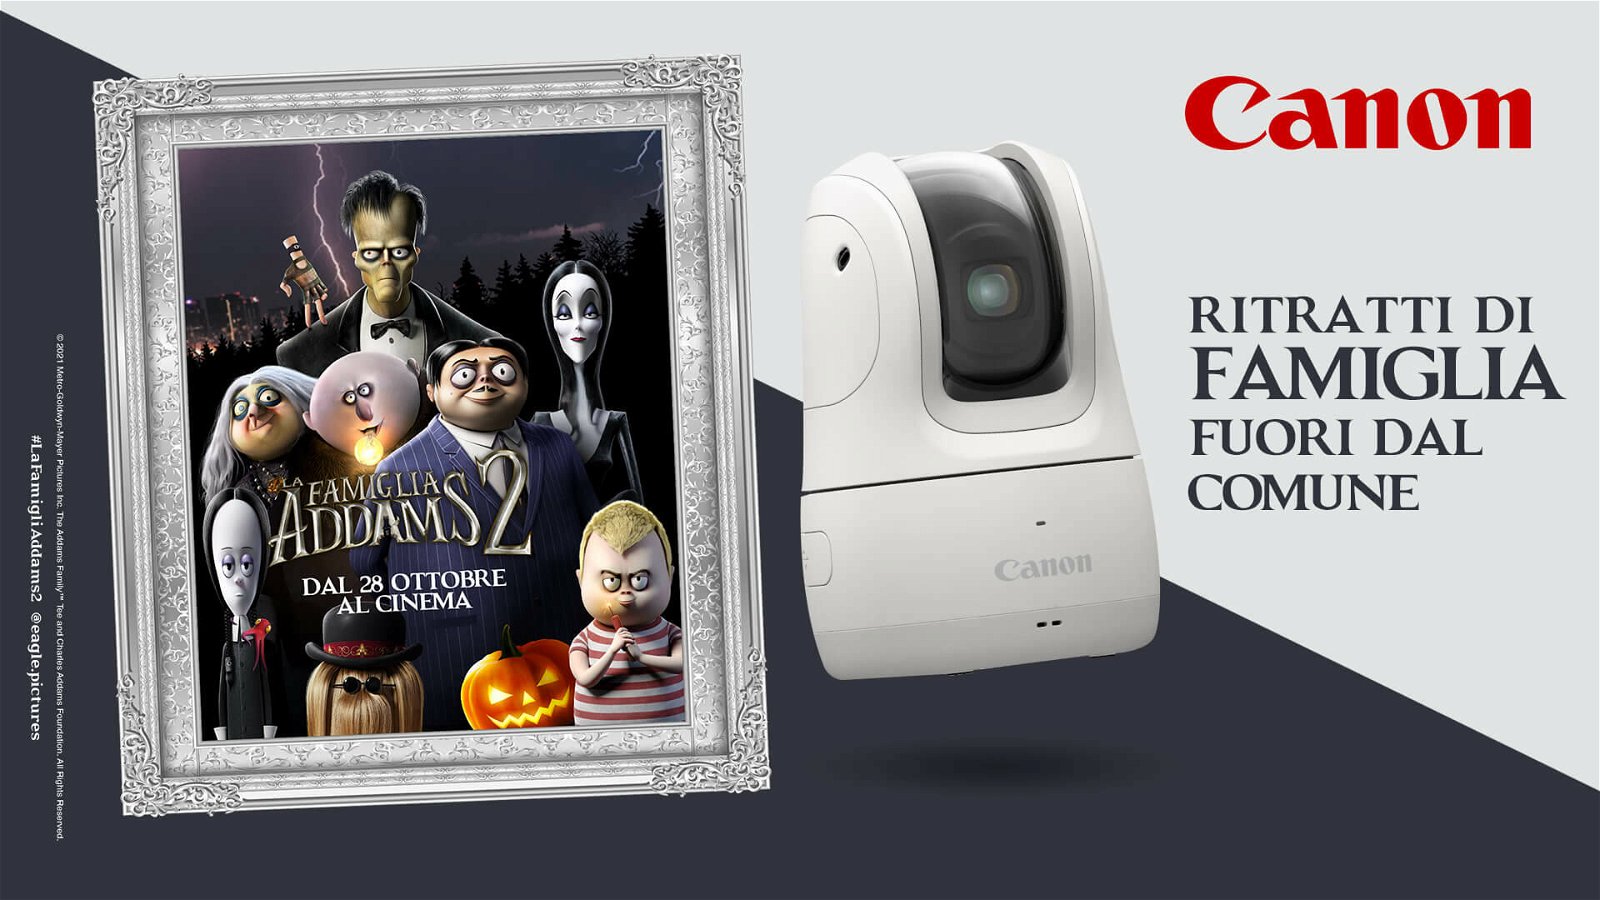 Immagine di Canon Italia mostruosamente al fianco de "La Famiglia Addams 2"